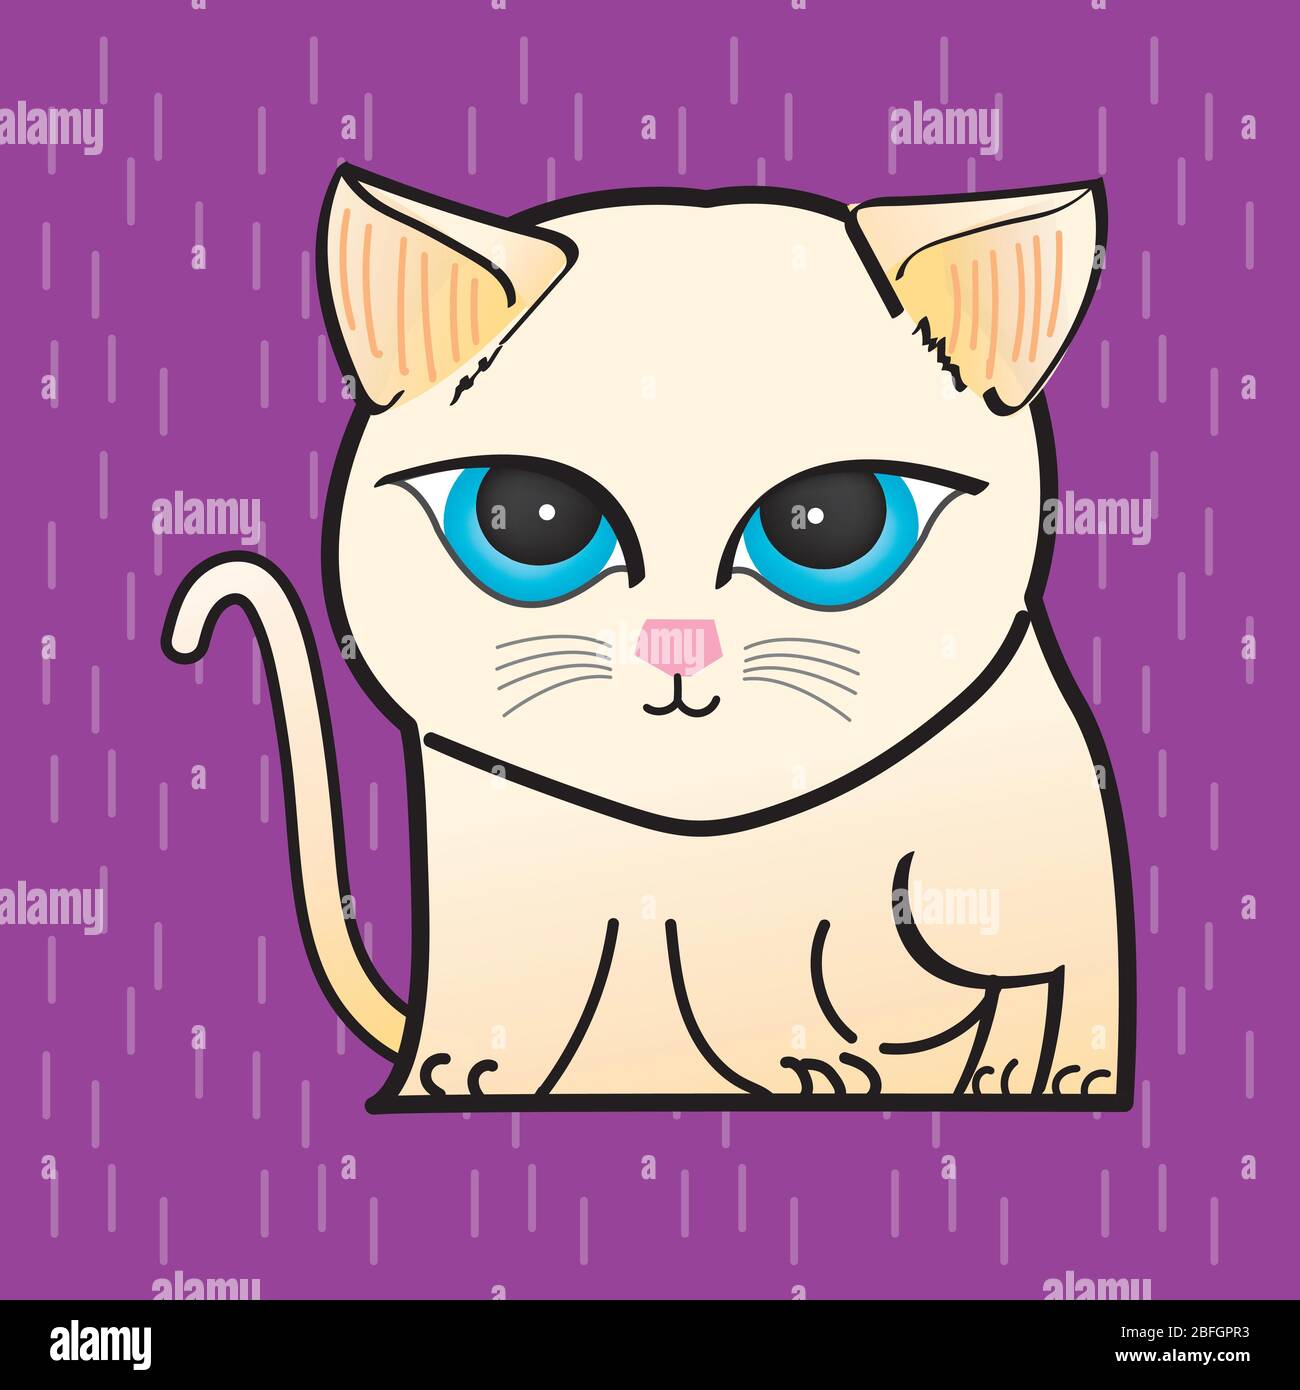 Cat Illustration Clipart. Un gatto di colore chiaro ha occhi blu rotondi. È su uno sfondo viola. Disegno a mano art. Illustrazione Vettoriale